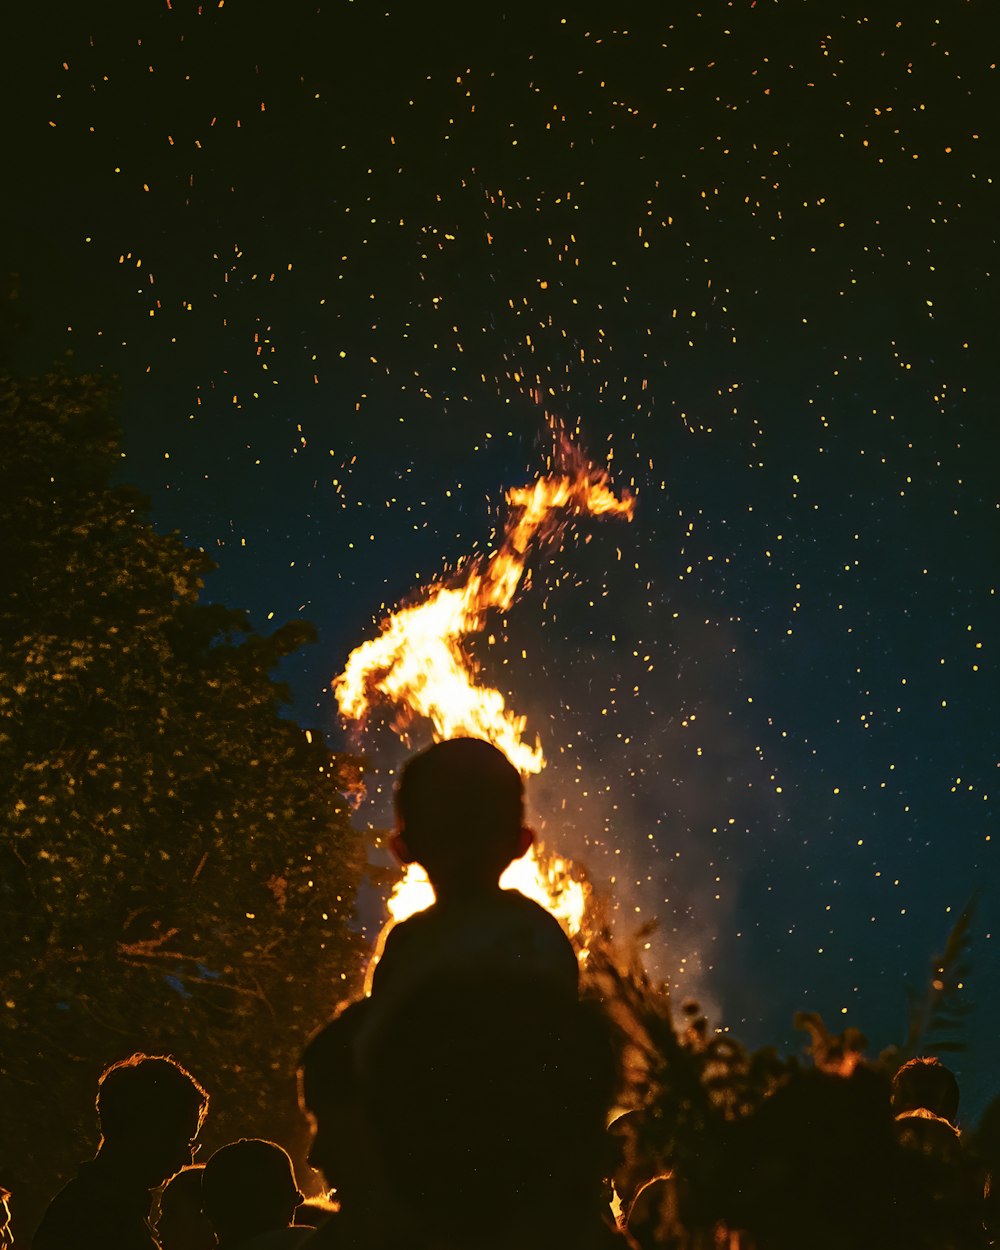 silueta de la gente que mira en llamas bajo la noche estrellada